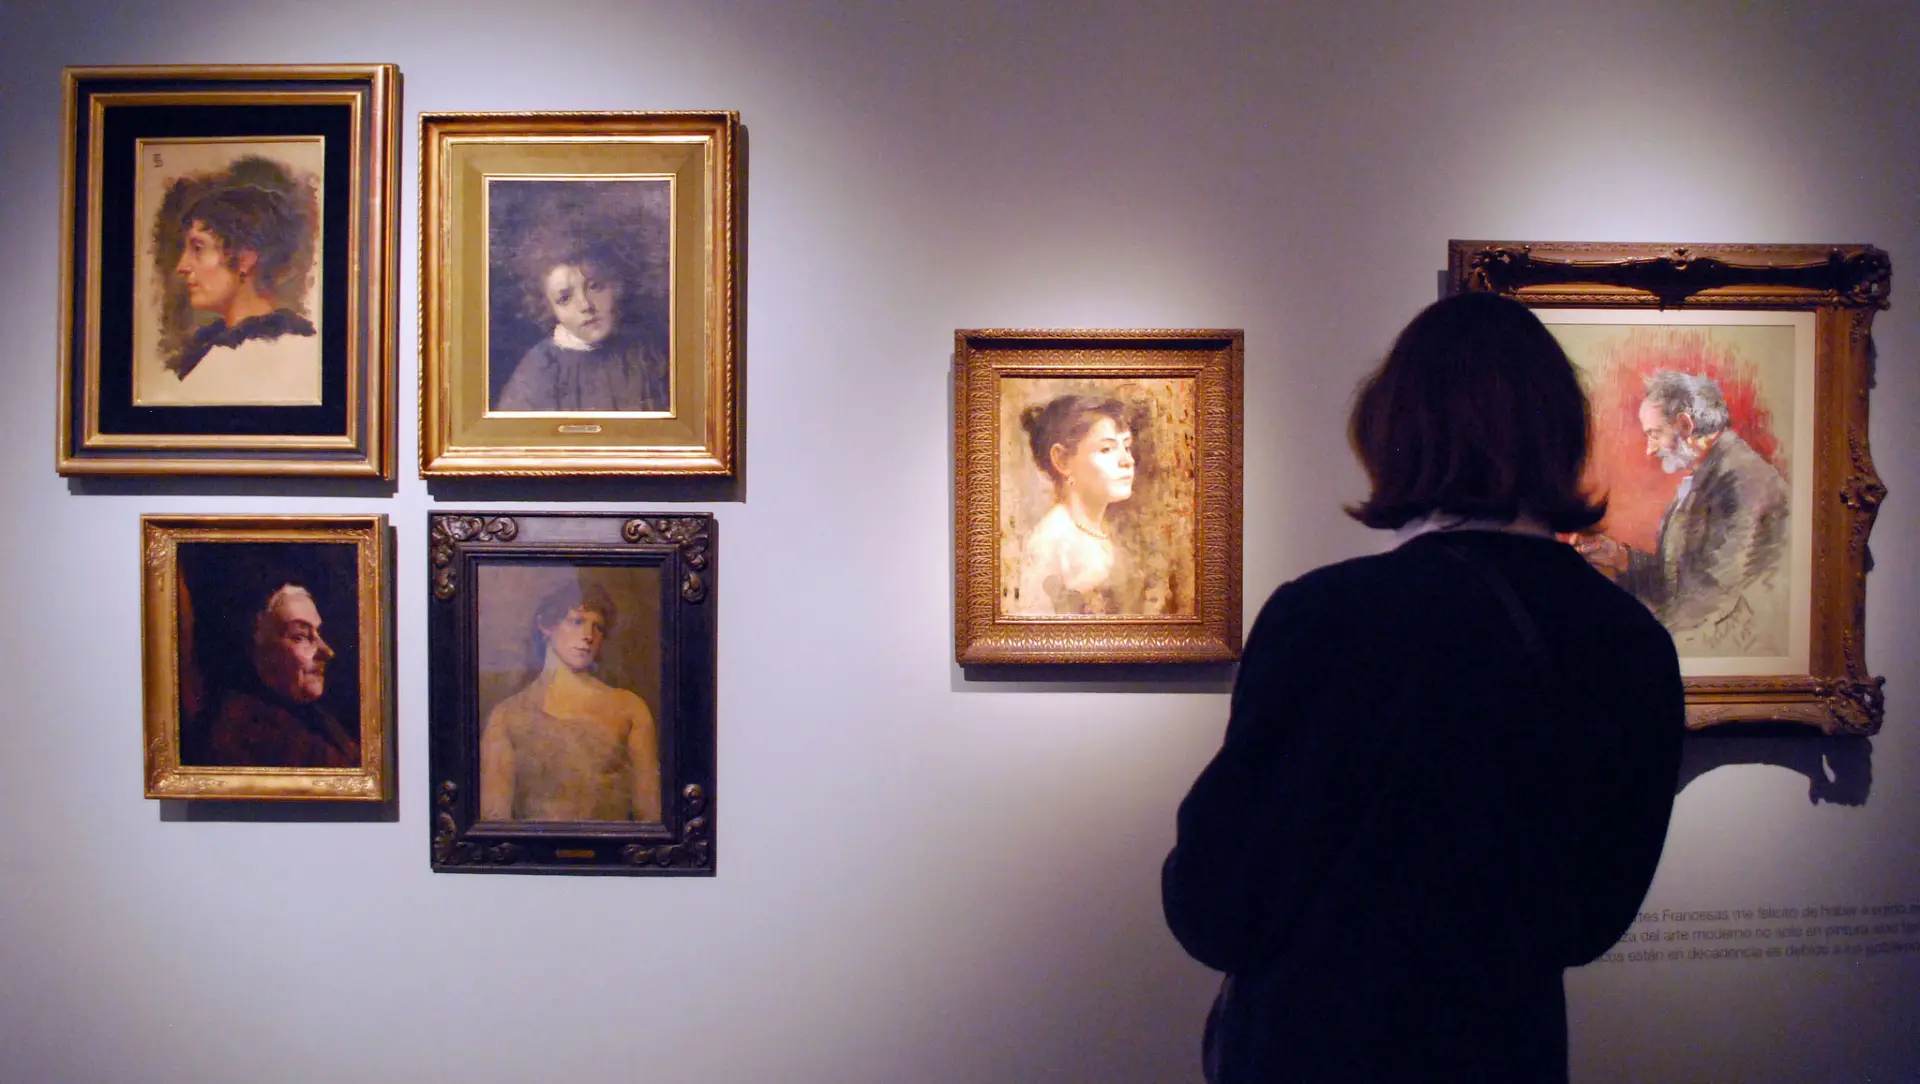 El Museo Nacional de Bellas Artes inauguró una muestra dedicada a Eduardo Sívori